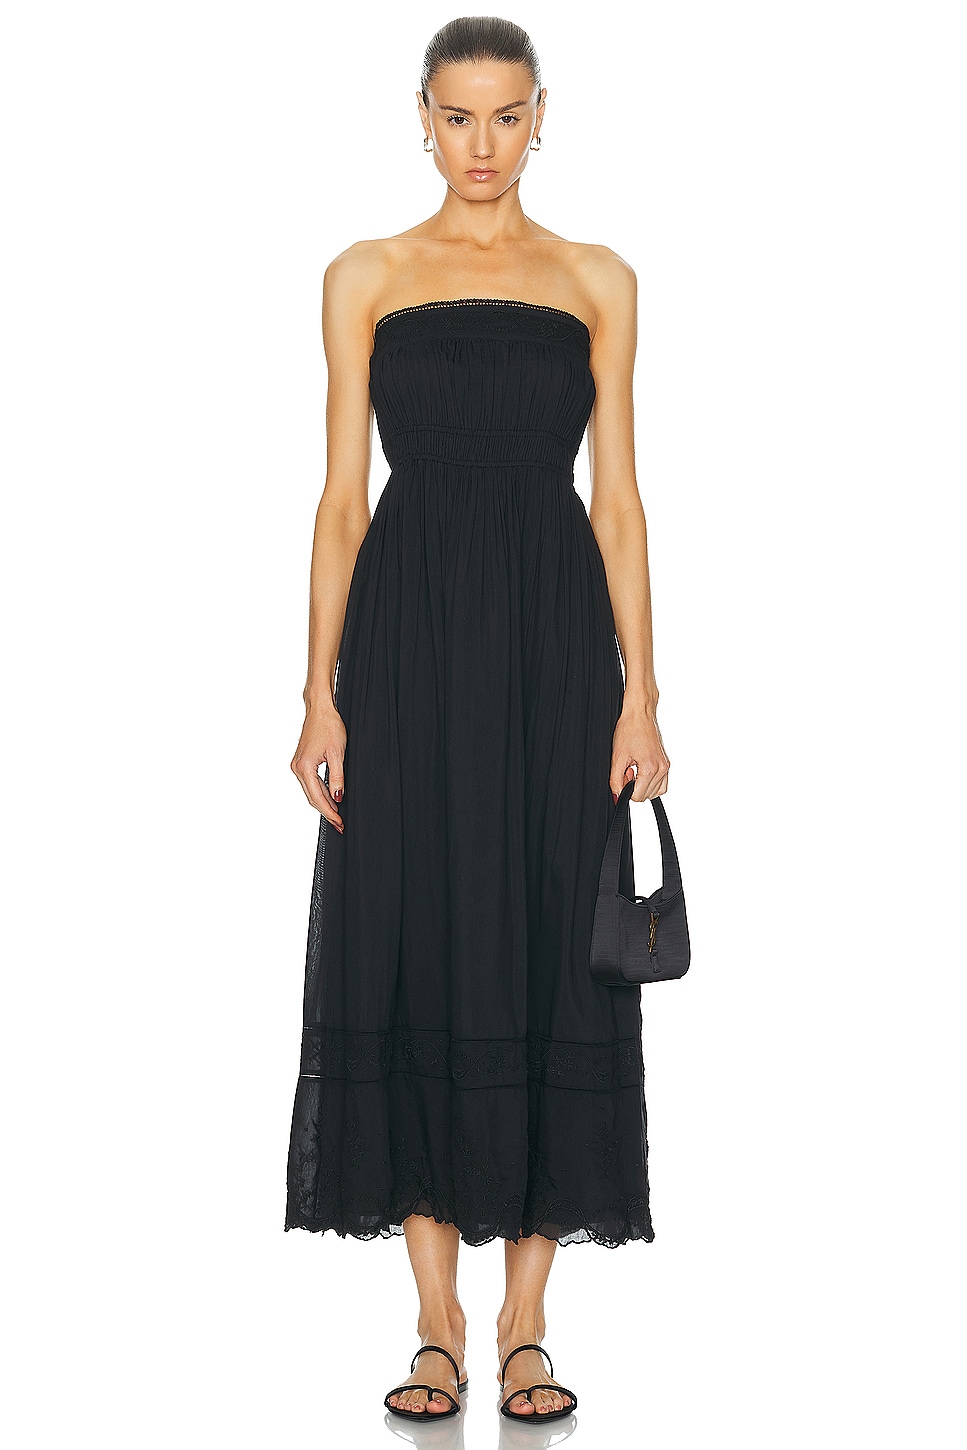 Mylah Strapless Dress in Black